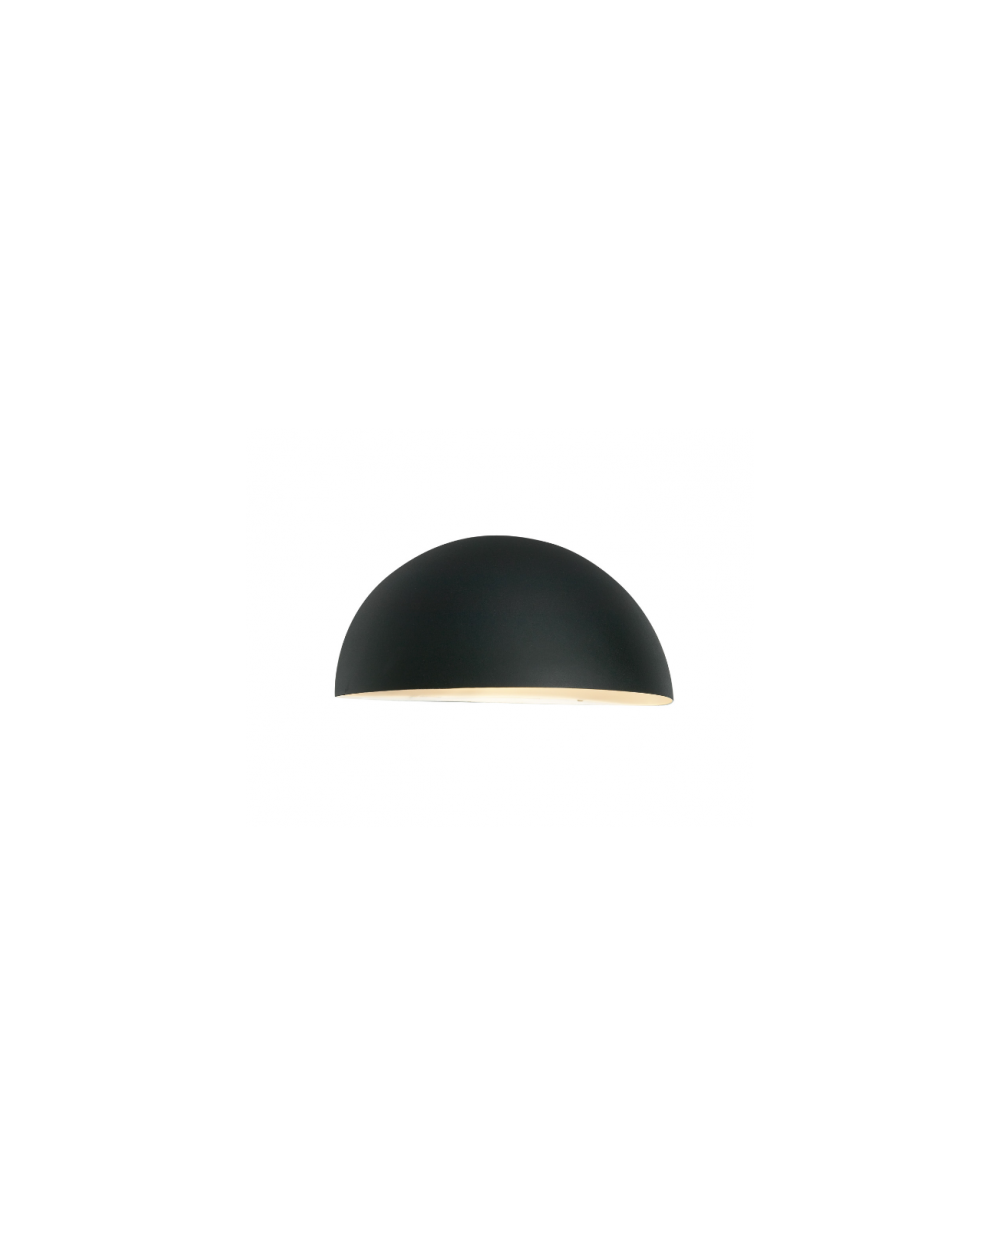 Lampa ścienna / kinkiet Big Paris - Norlys oprawa zewnętrzna czarna ocynk lub biała